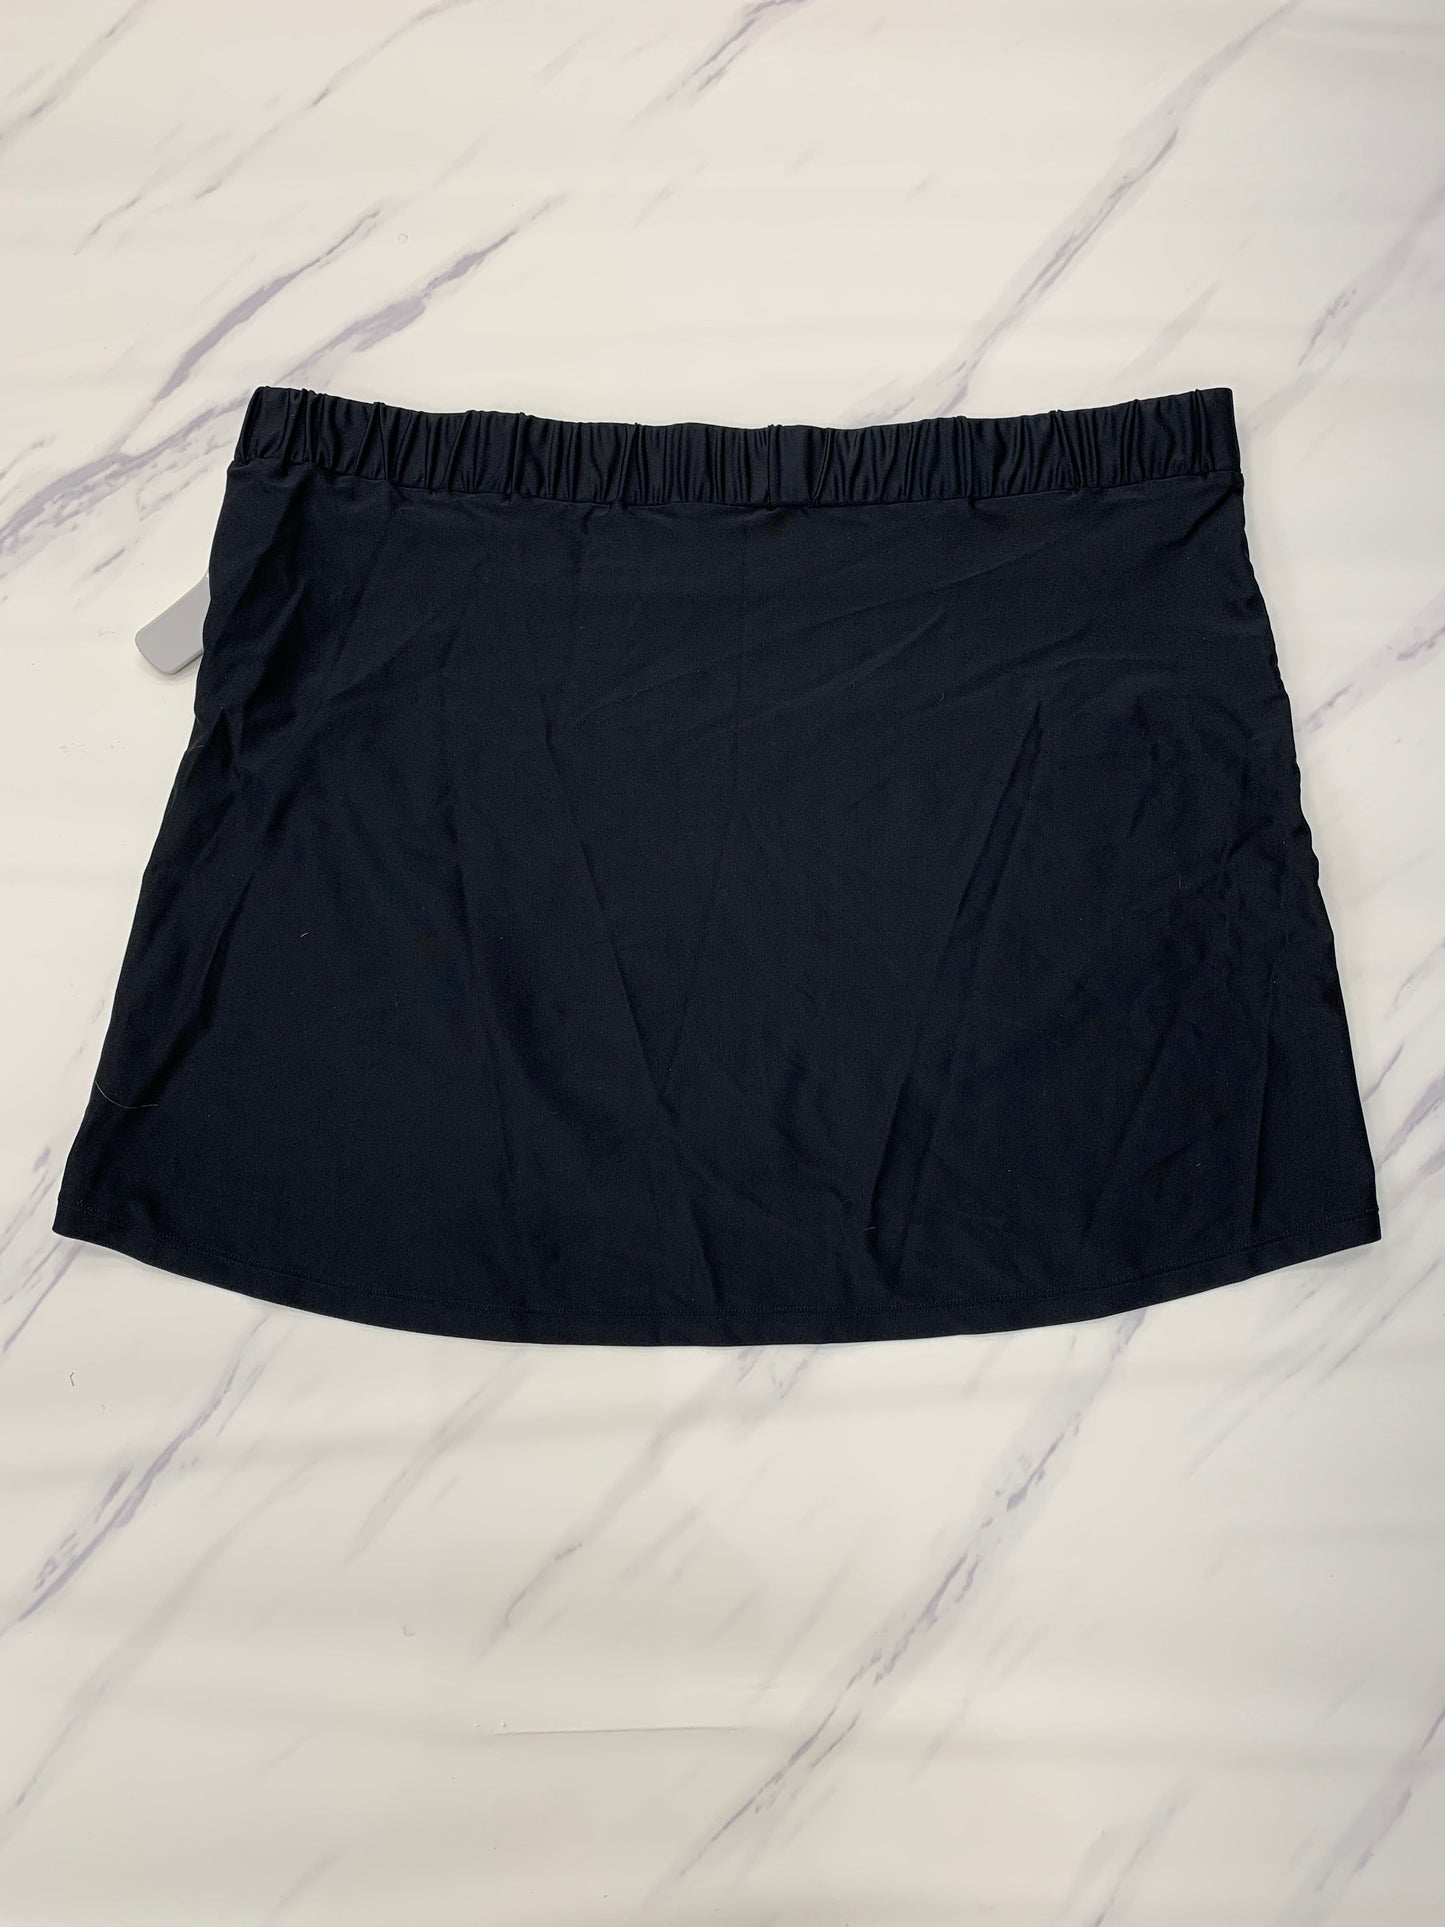 Black Skirt Mini & Short Cma, Size Xl